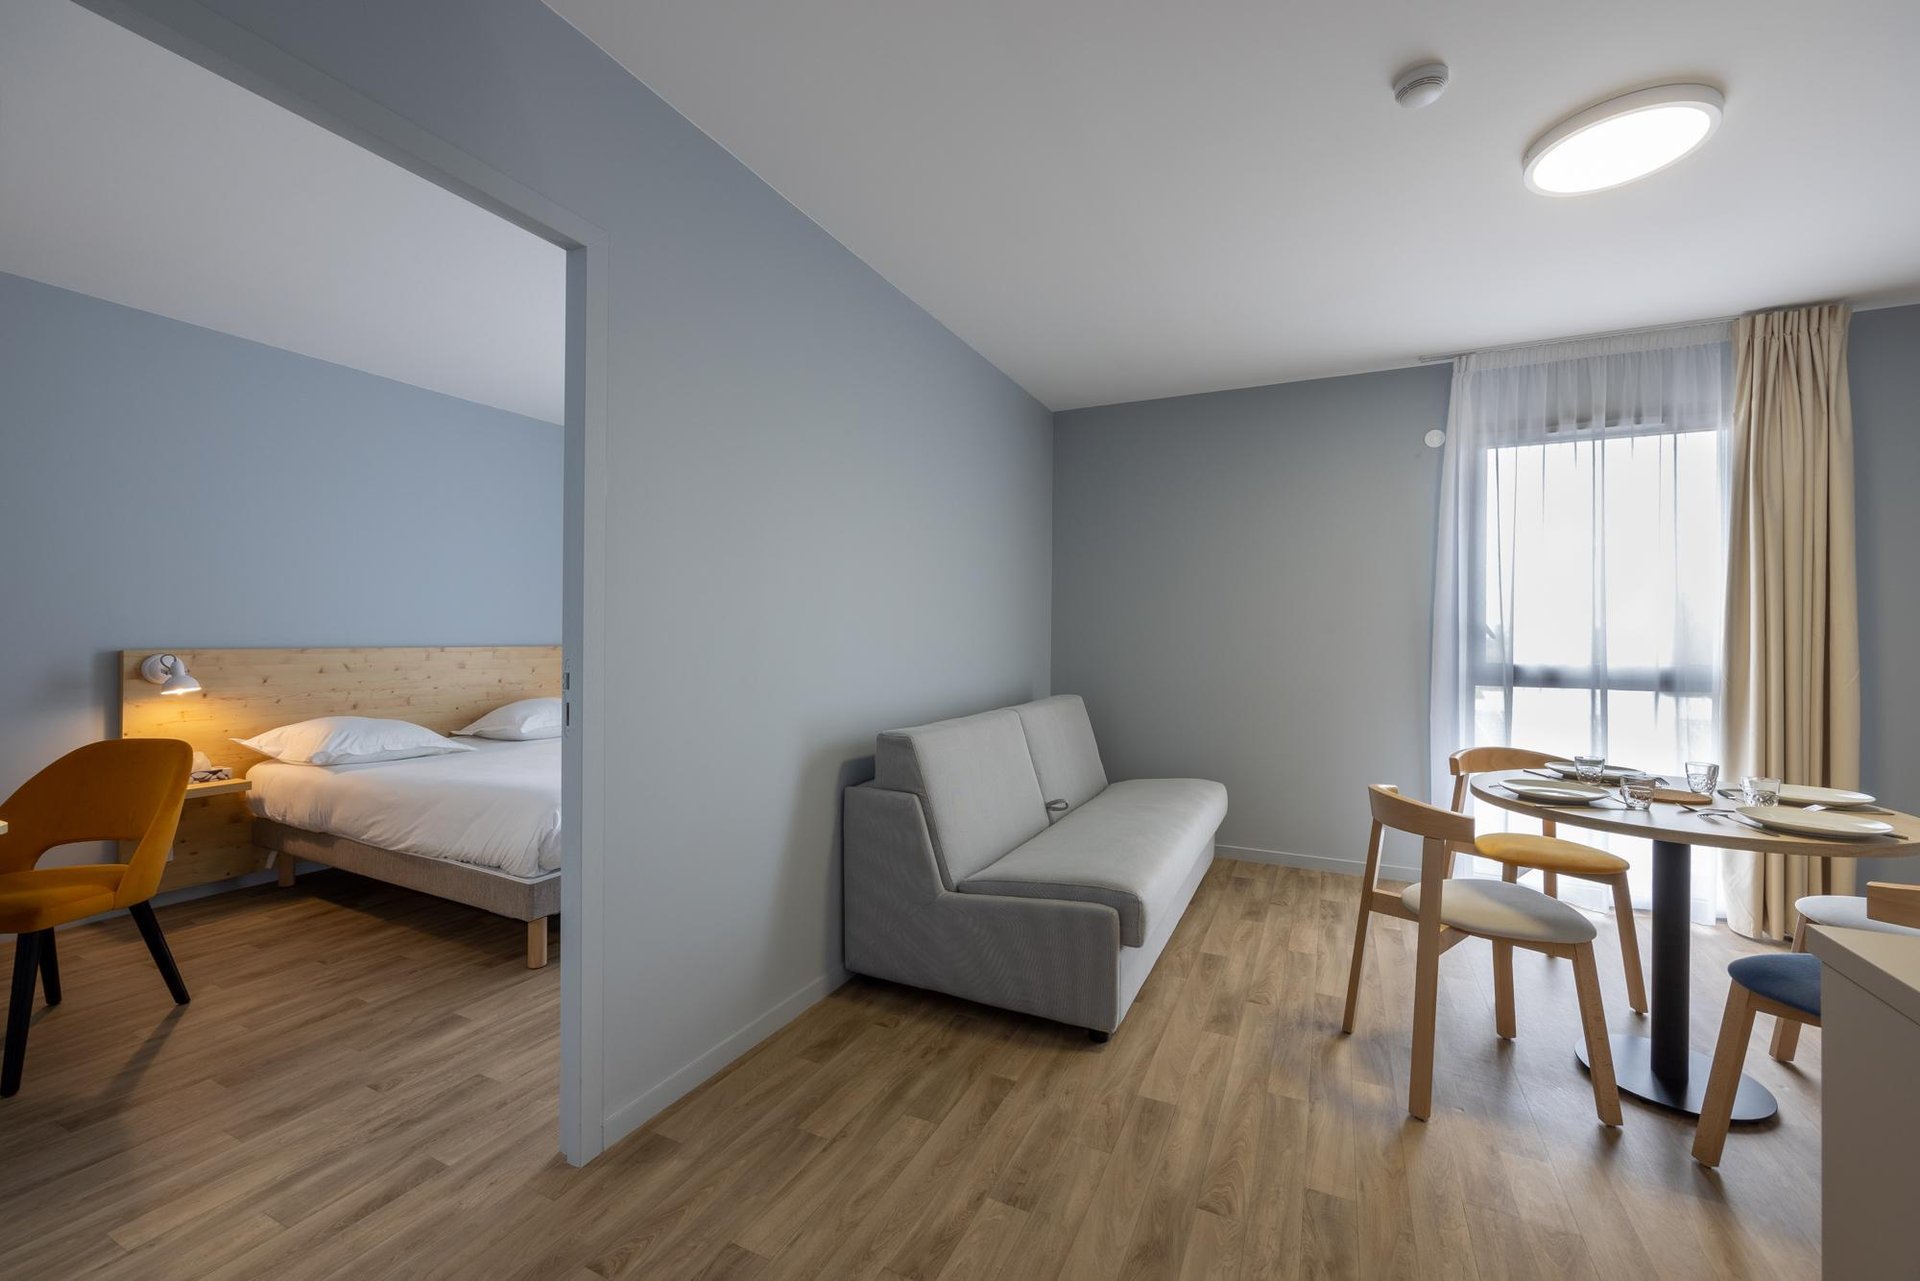 Le Relais des Deux Mers | Hôtel 3 étoiles Lot-et-Garonne | Appartement Familiale